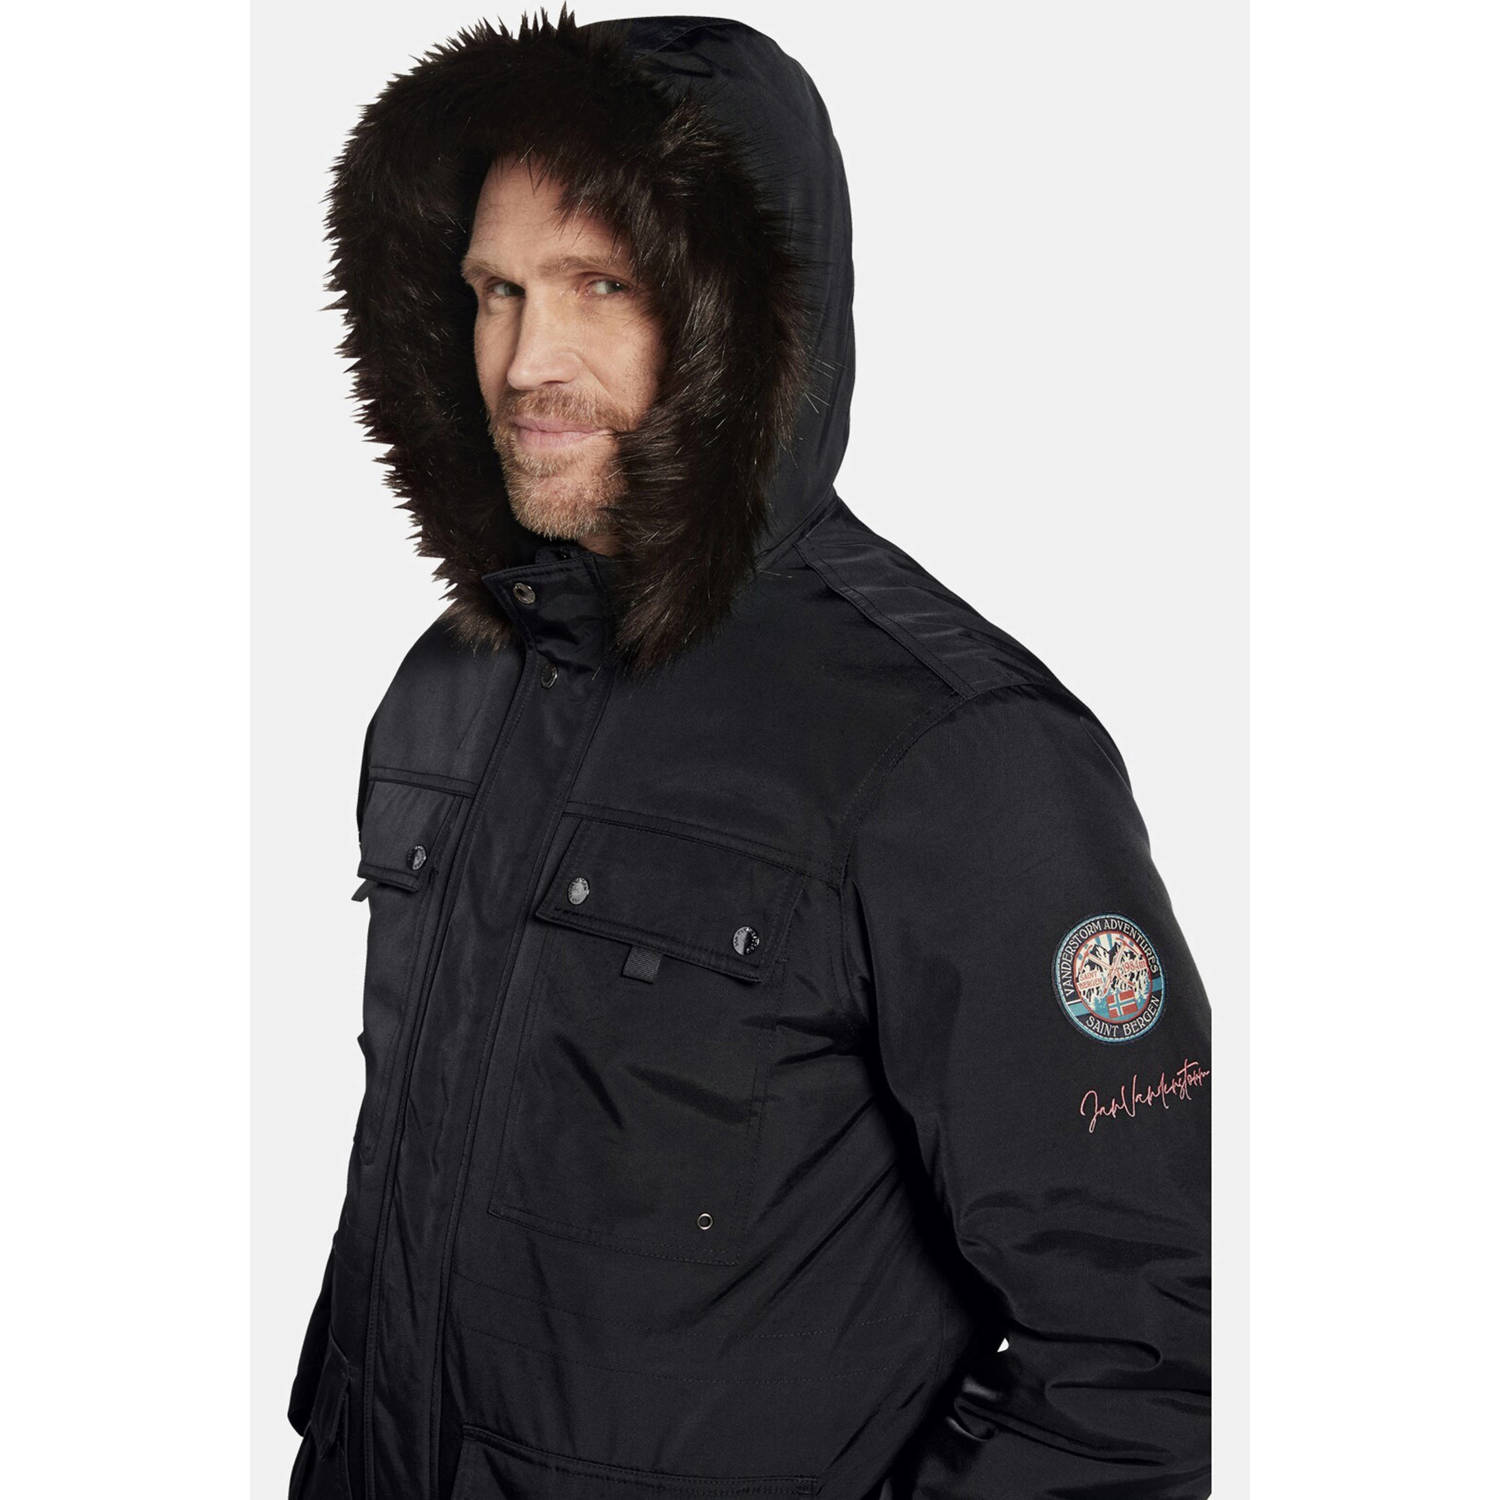 Jan Vanderstorm gewatteerde jas REIMAR Plus Size met printopdruk zwart